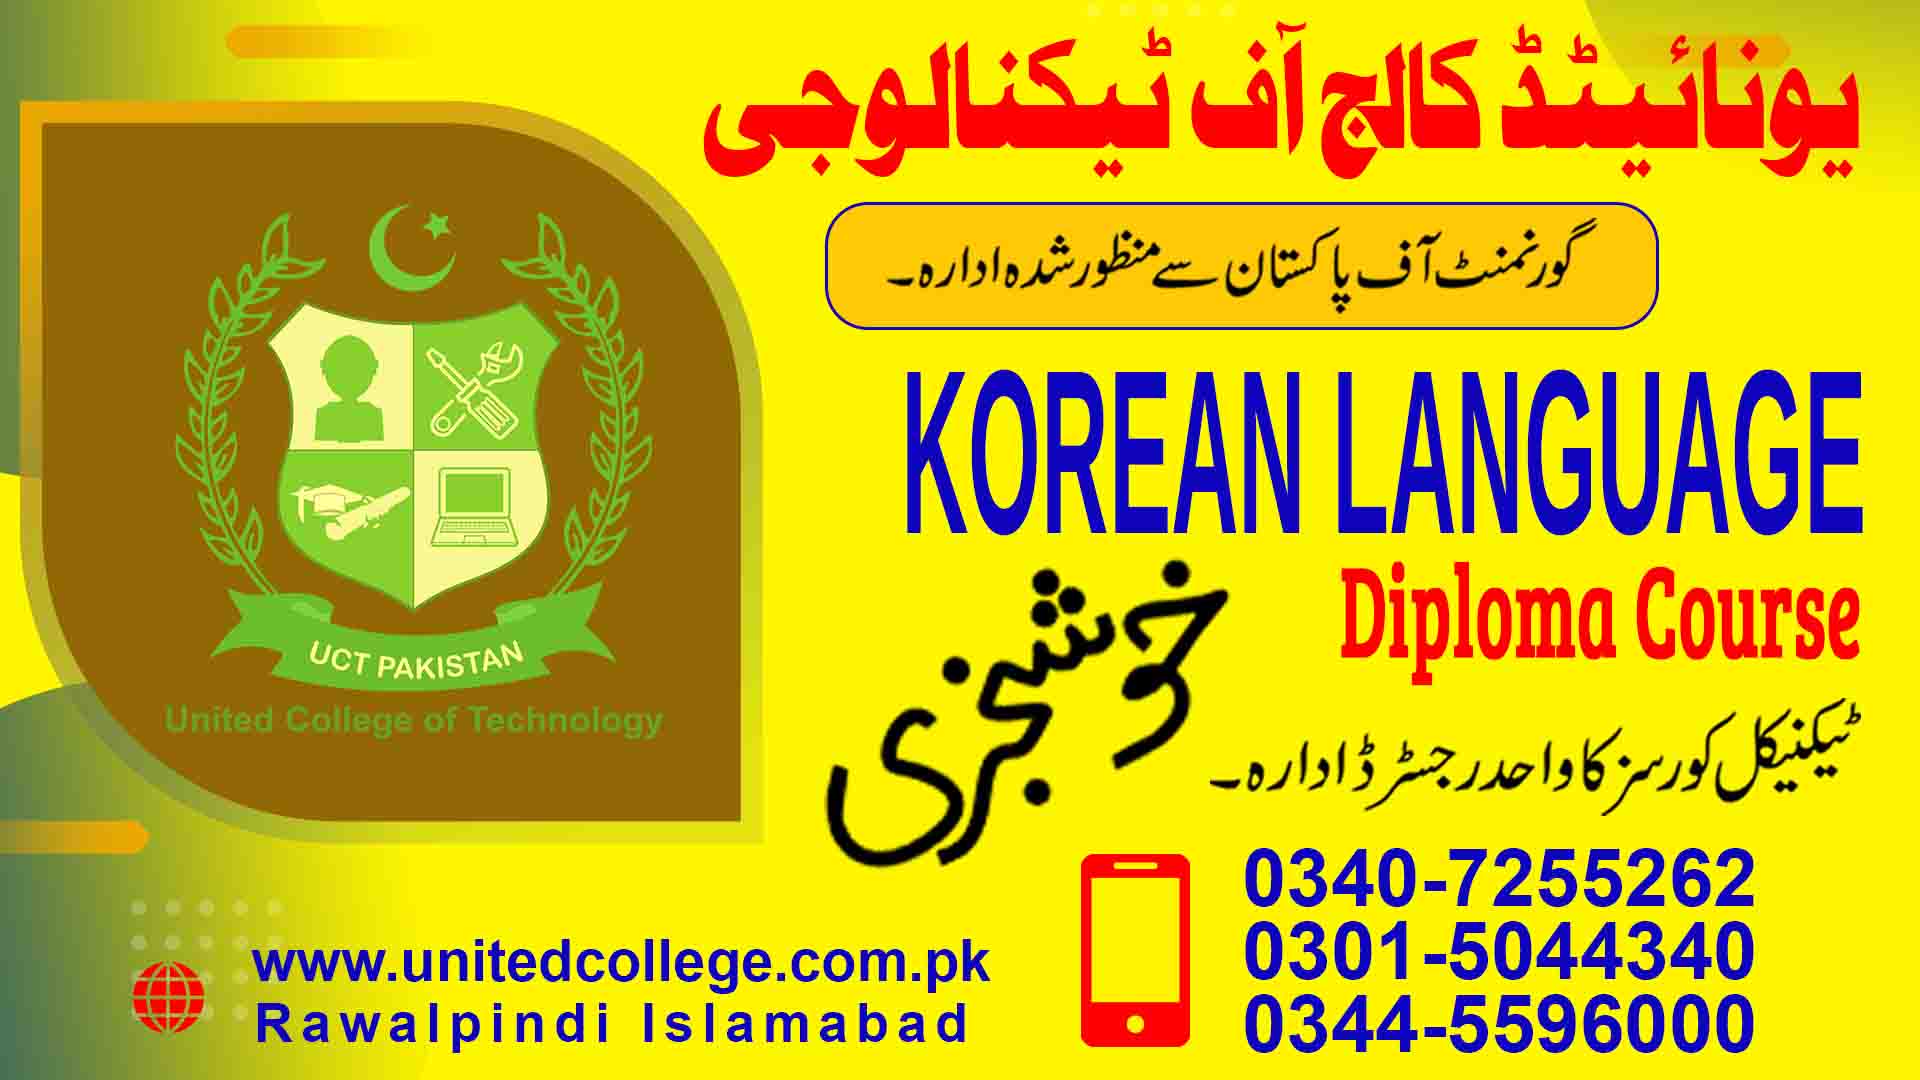 KOREAN LANGUAGE COURSE IN RAWALPINDI ISLAMABAD PAKISTAN